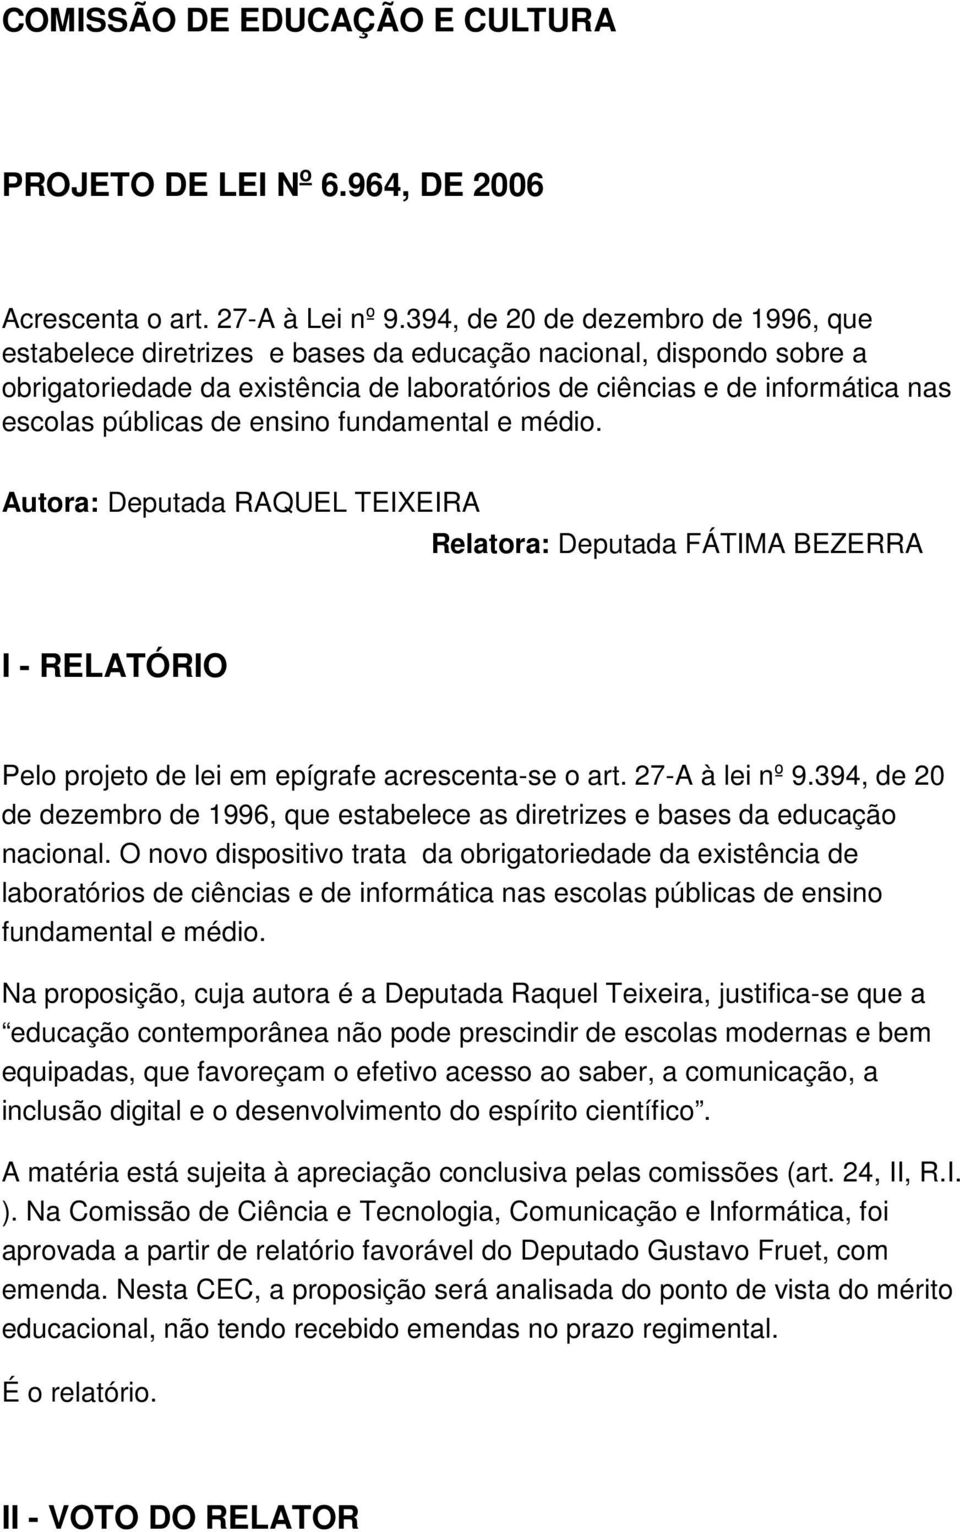 públicas de ensino fundamental e médio. Autora: Deputada RAQUEL TEIXEIRA Relatora: Deputada FÁTIMA BEZERRA I - RELATÓRIO Pelo projeto de lei em epígrafe acrescenta-se o art. 27-A à lei nº 9.